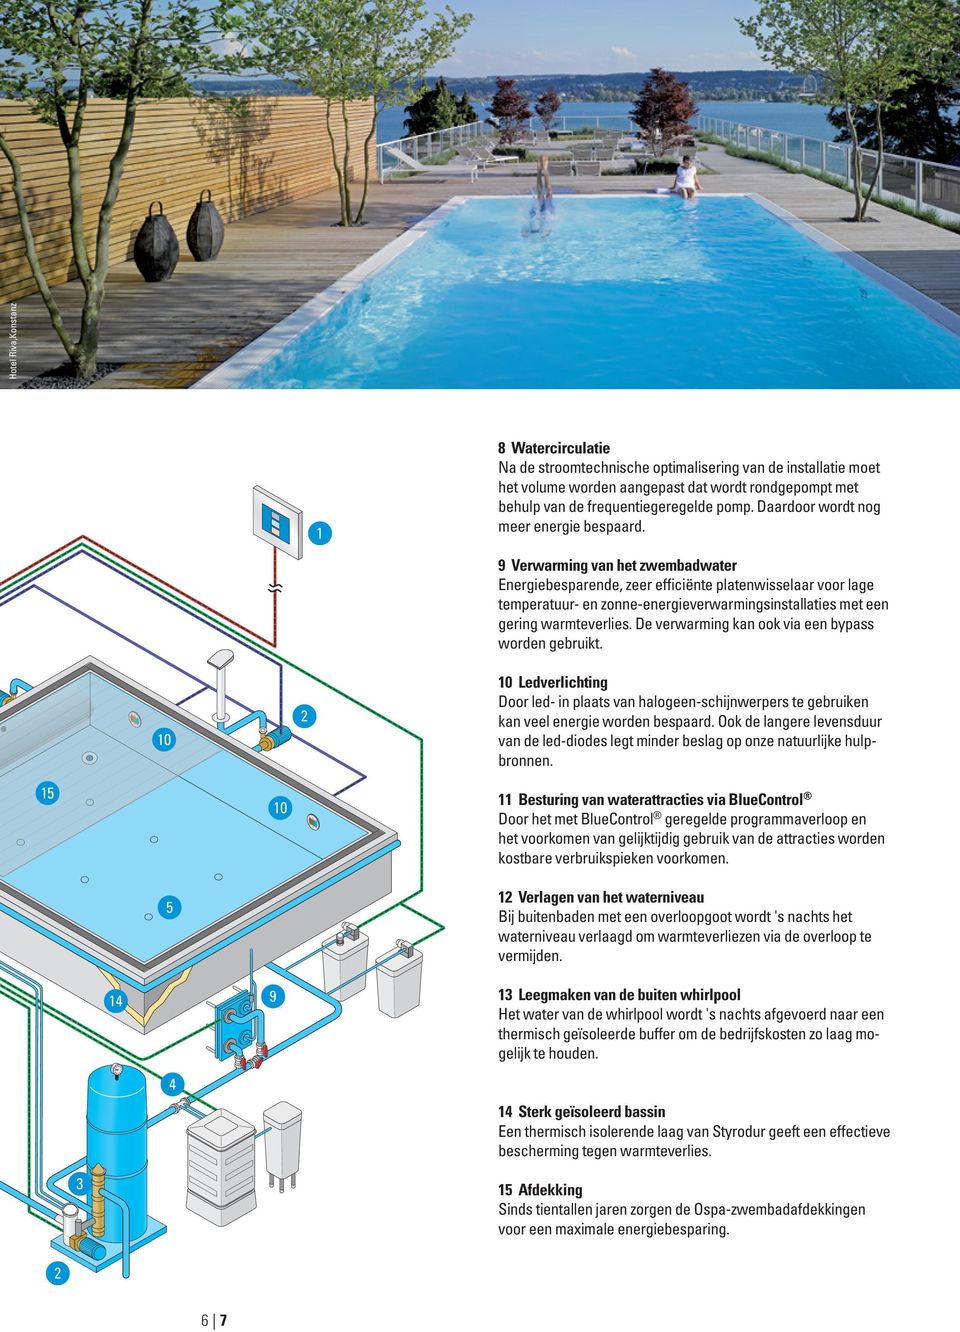 10 2 9 Verwarming van het zwembadwater Energiebesparende, zeer efficiënte platenwisselaar voor lage temperatuur- en zonne-energieverwarmingsinstallaties met een gering warmteverlies.